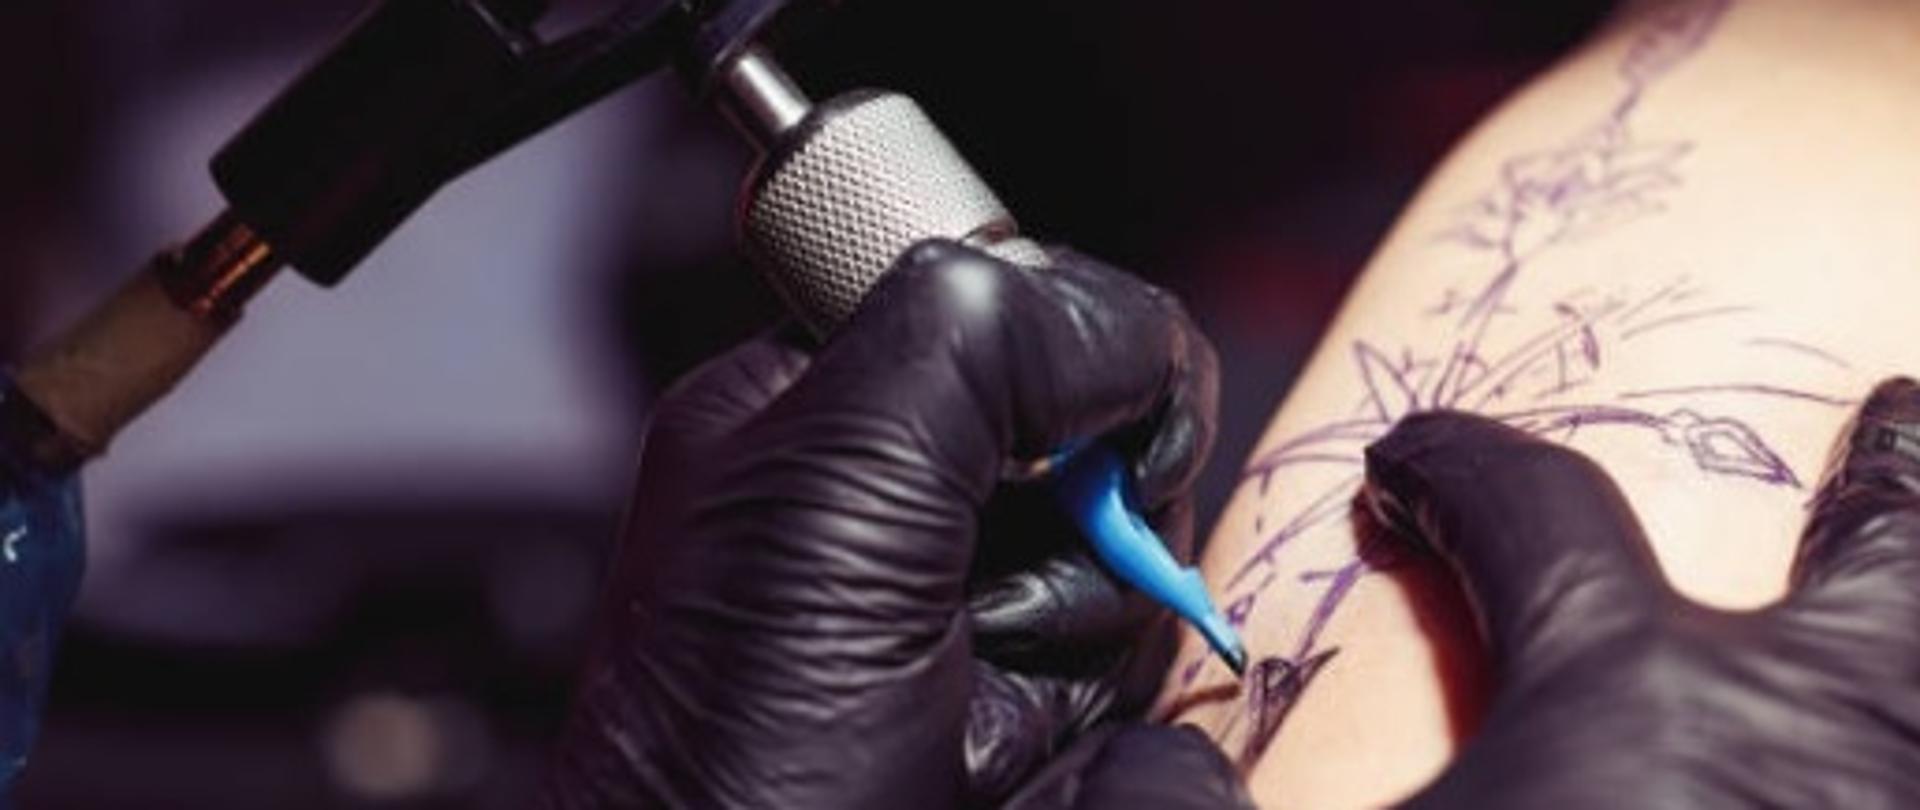 Proces tatuowania przedramienia